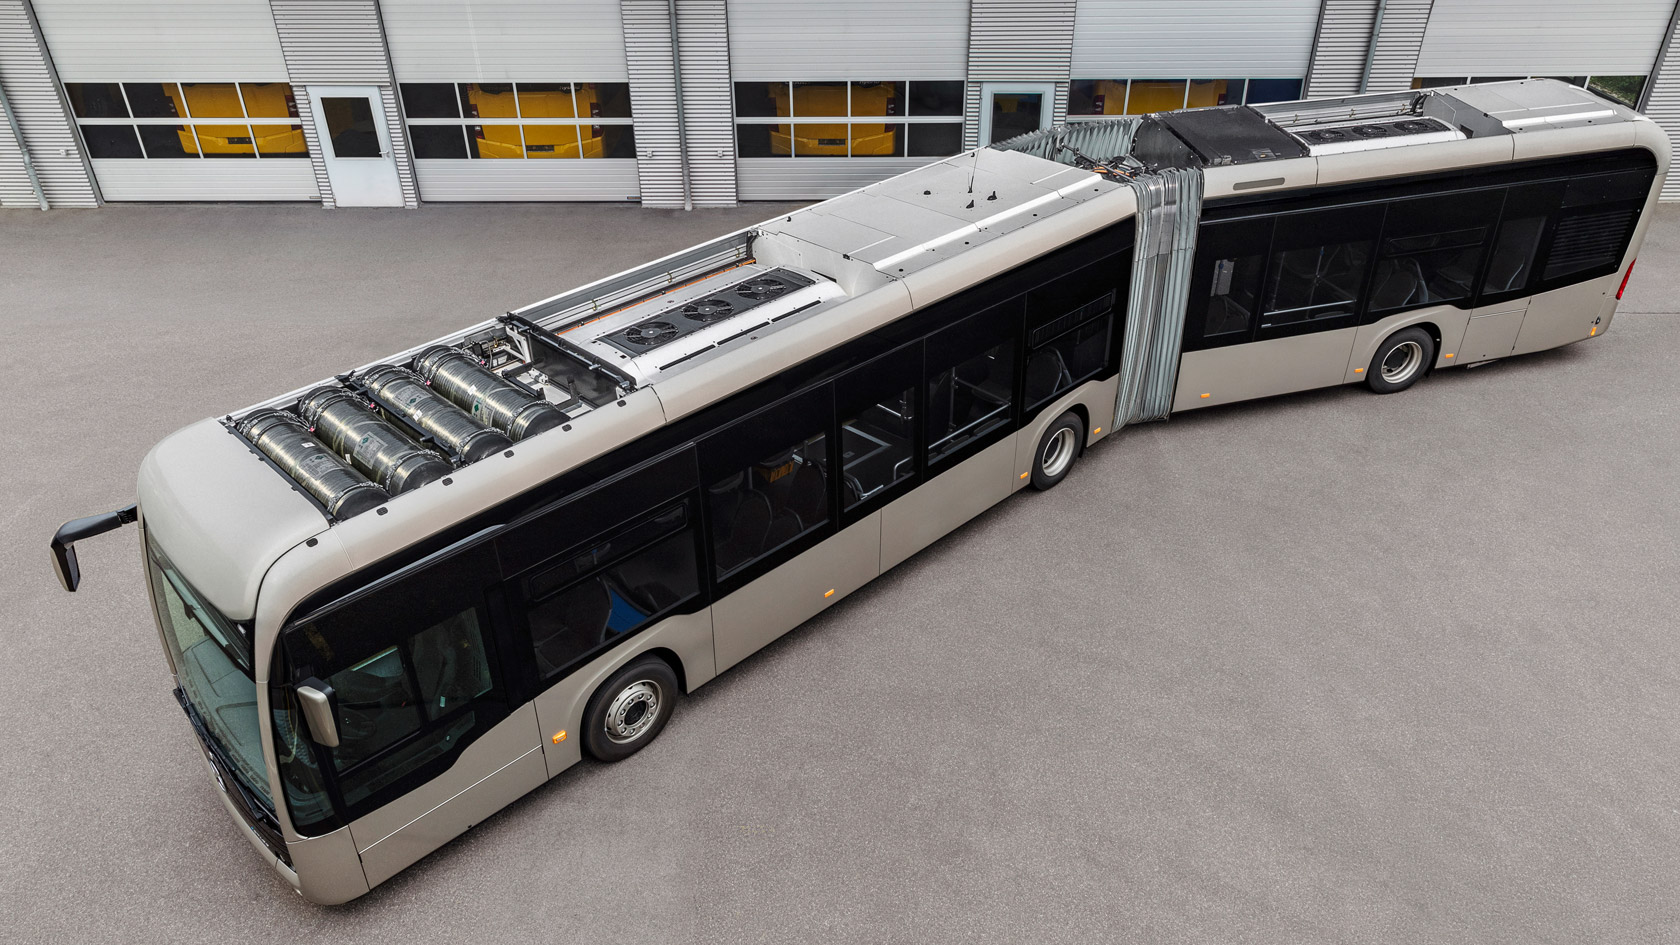 Prolongateur d’autonomie pour l’eCitaro, nouvelles batteries, mobilité électrique provenant d’un seul fournisseur, services numériques – c’est ainsi que Daimler Buses remplace le moteur thermique dans le bus urbain.